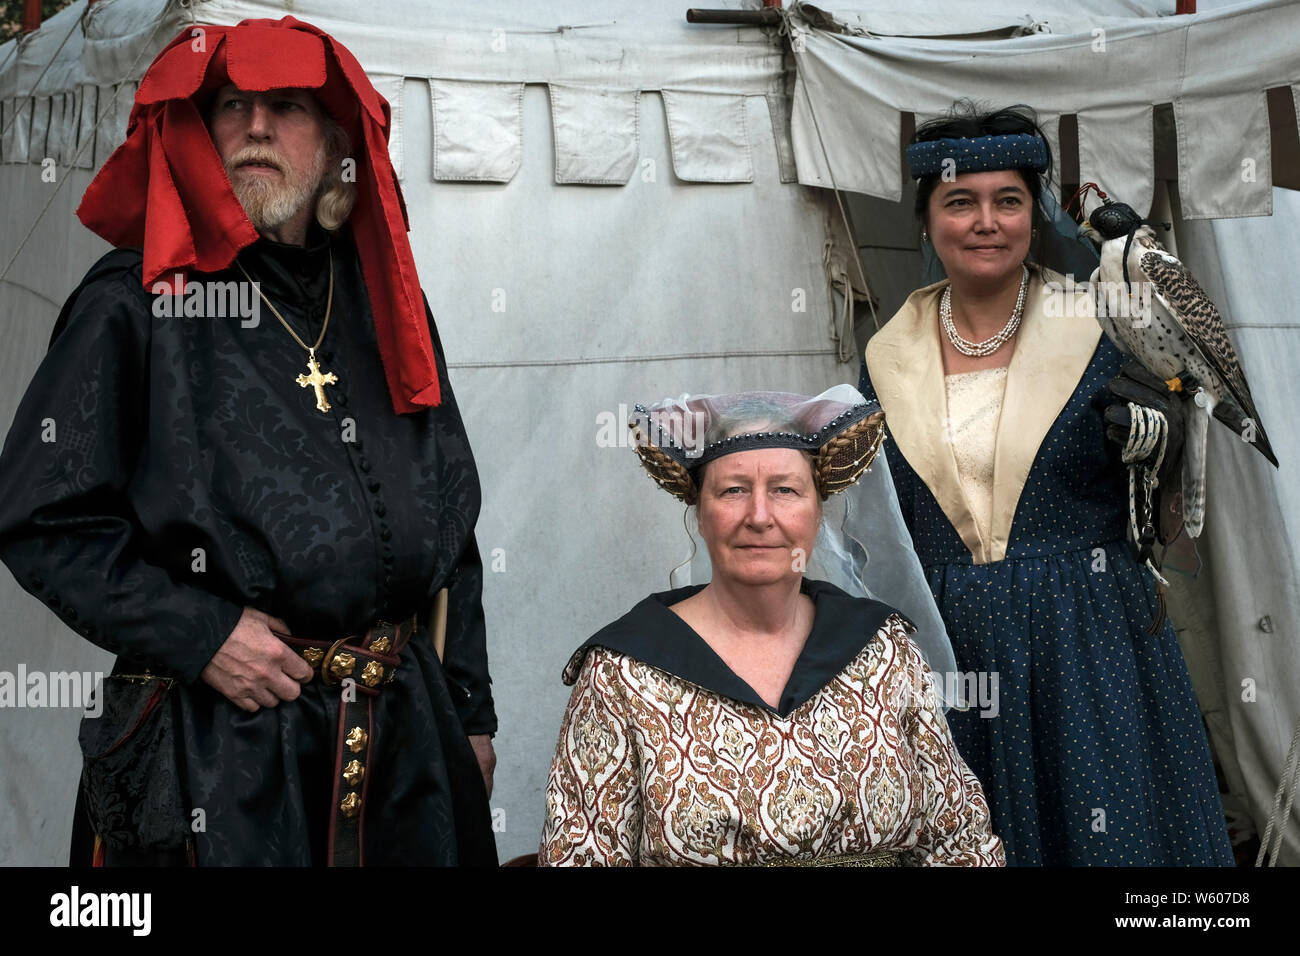 Une famille noble pose en costumes, tandis que la fille porte un faucon sur son bras. Banque D'Images